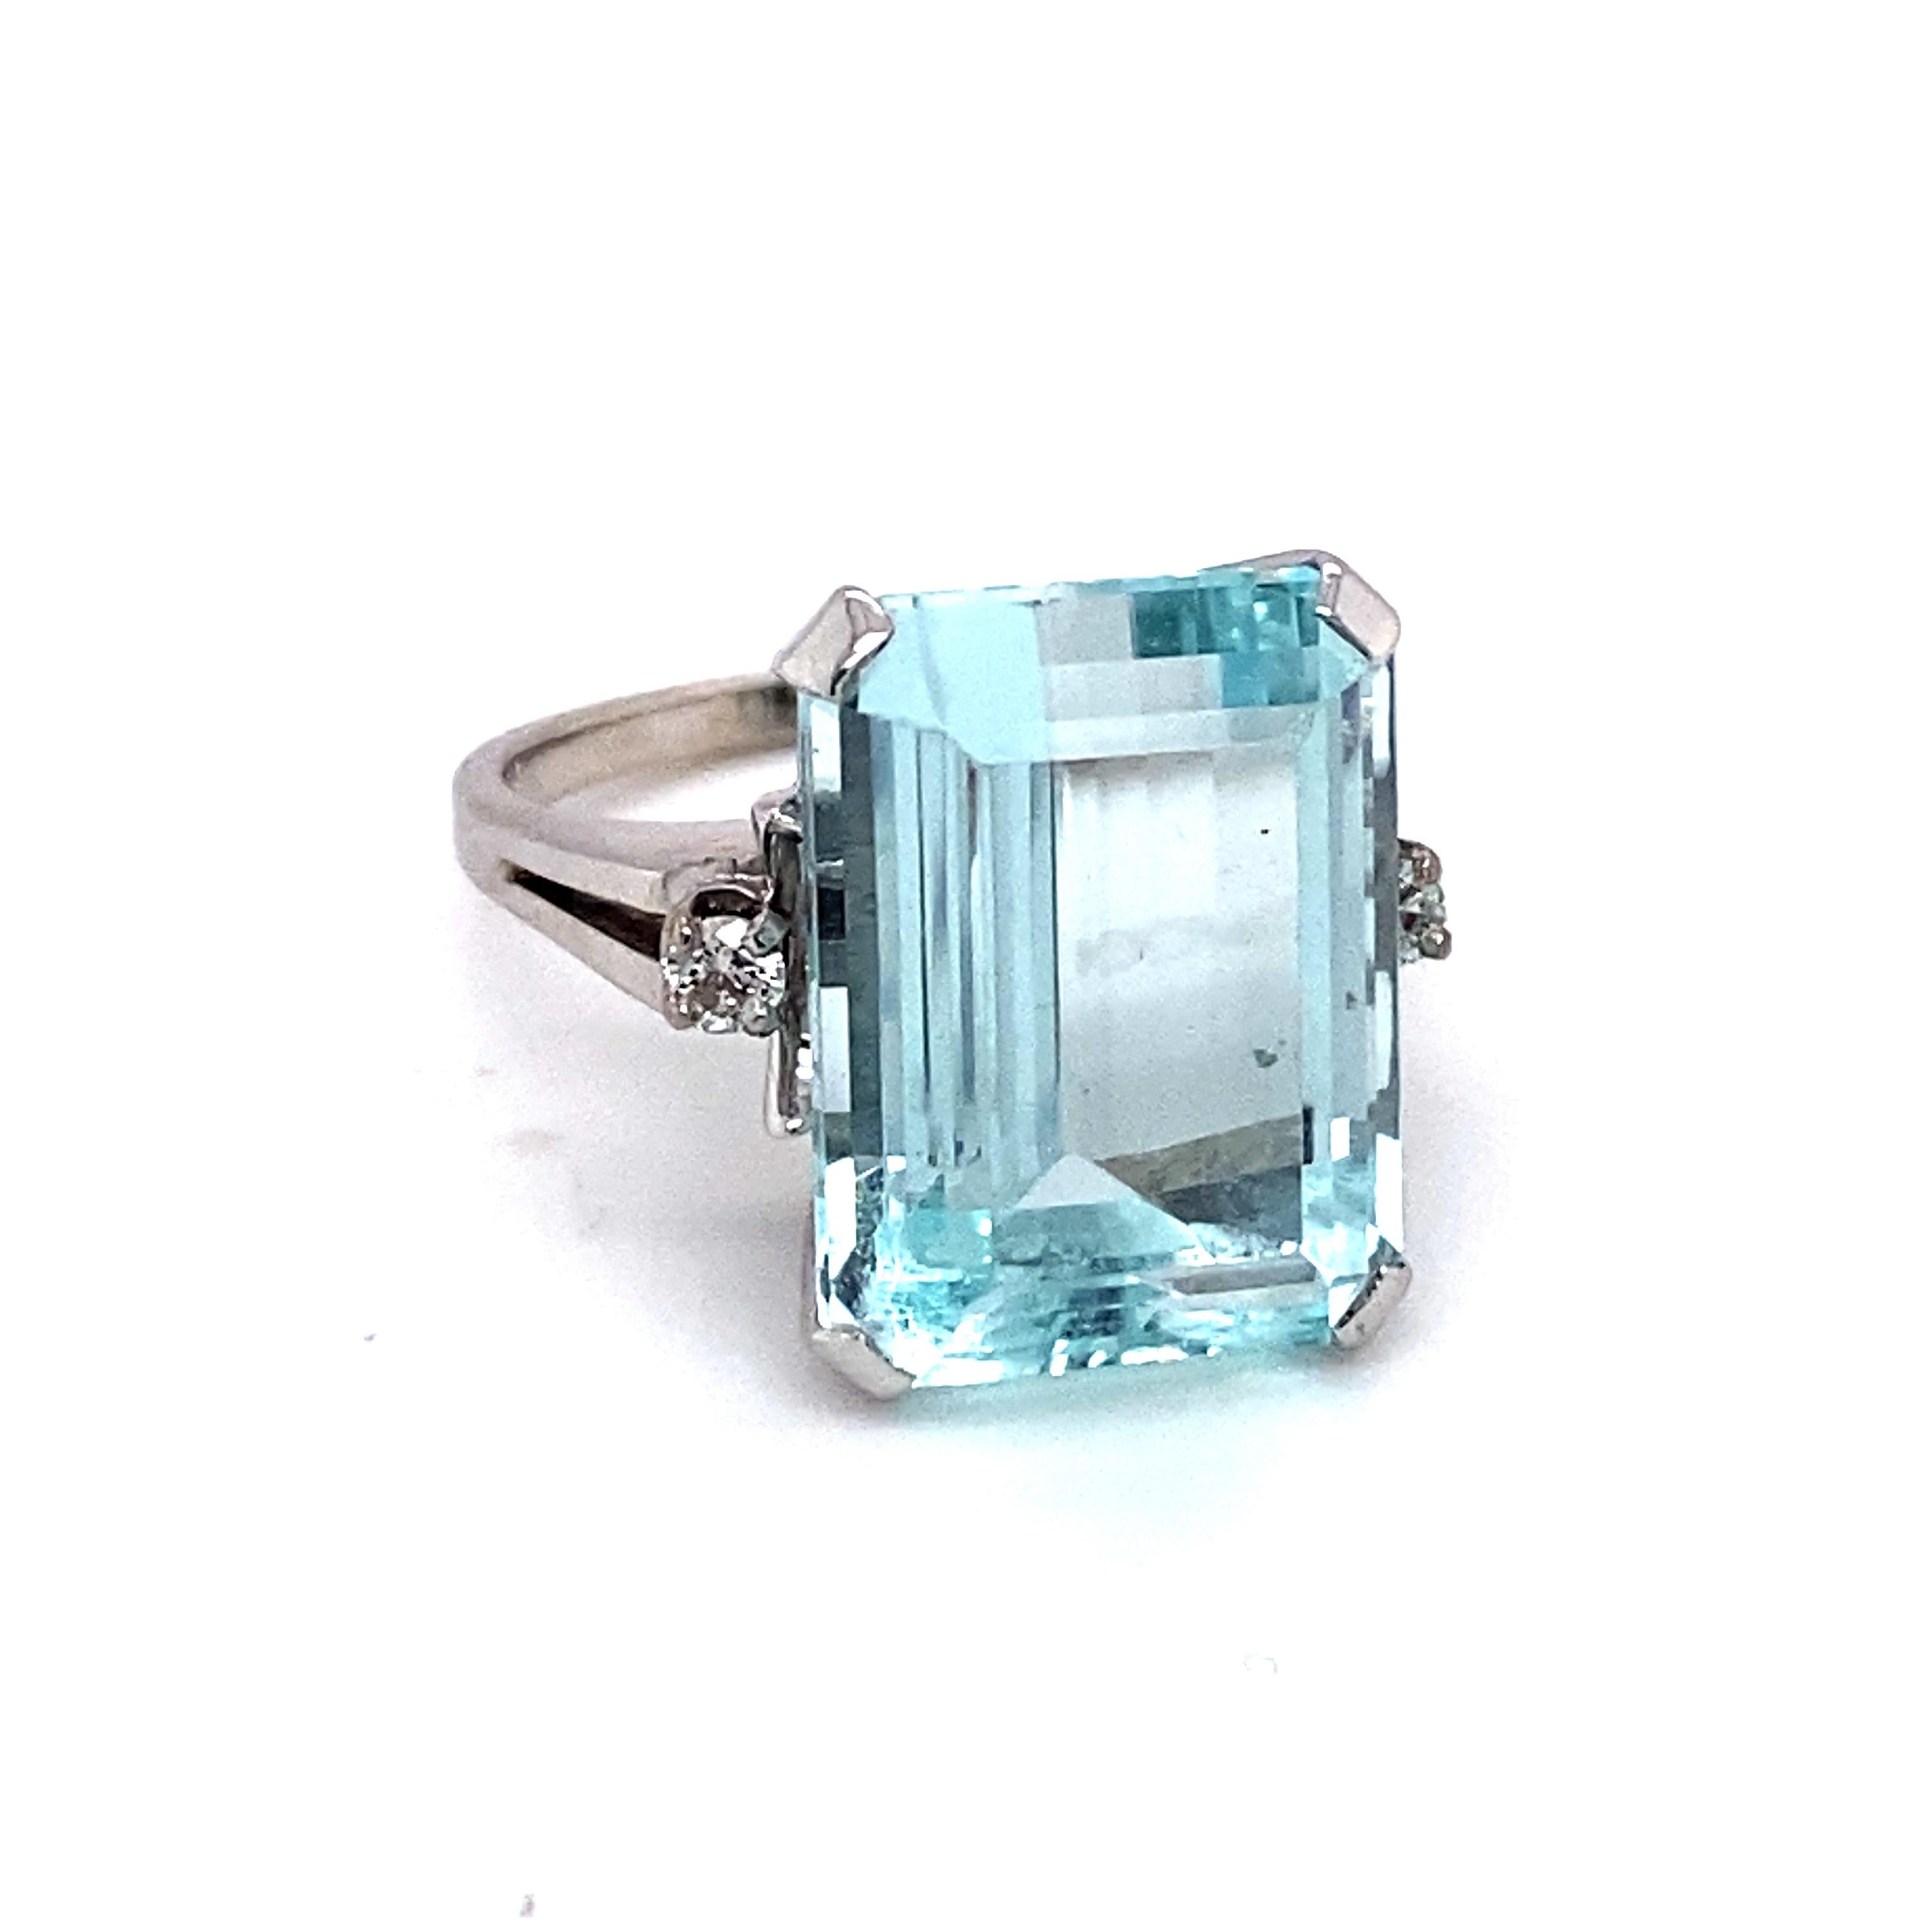 16 carat aquamarine ring